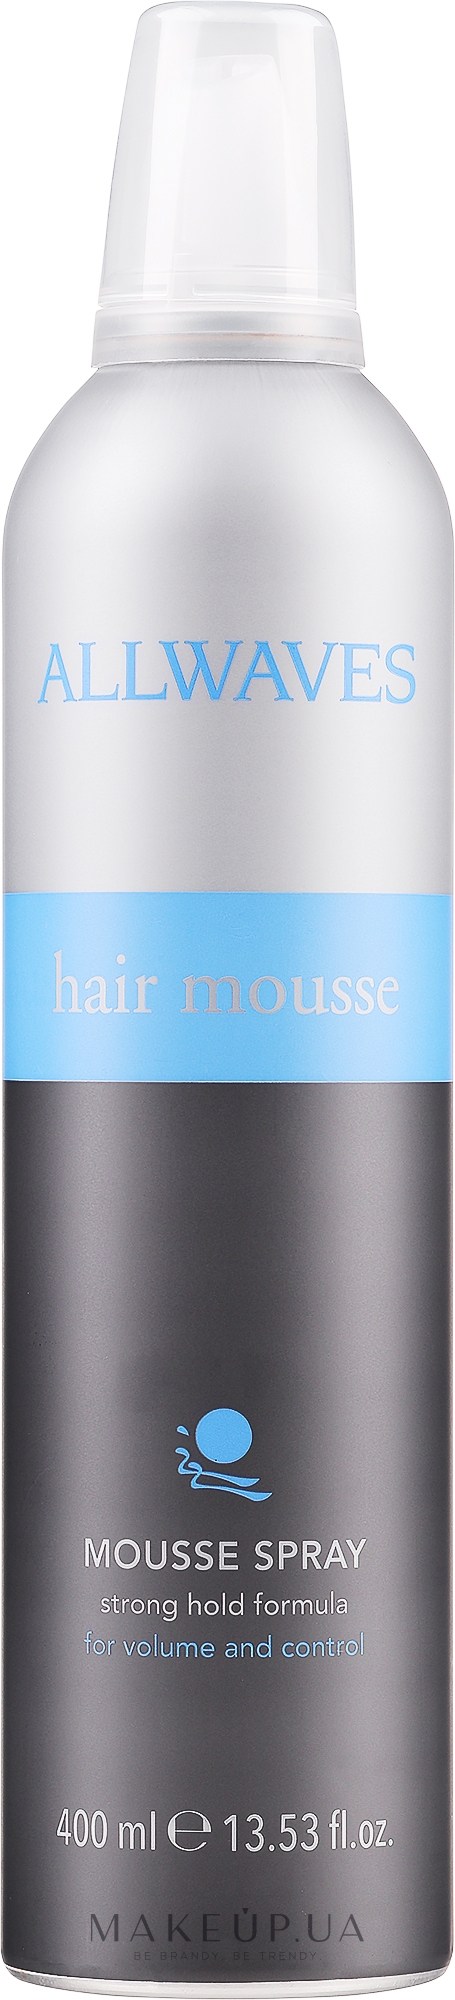 Пенка для укладки волос - Allwaves Hair Mousse Spray — фото 400ml